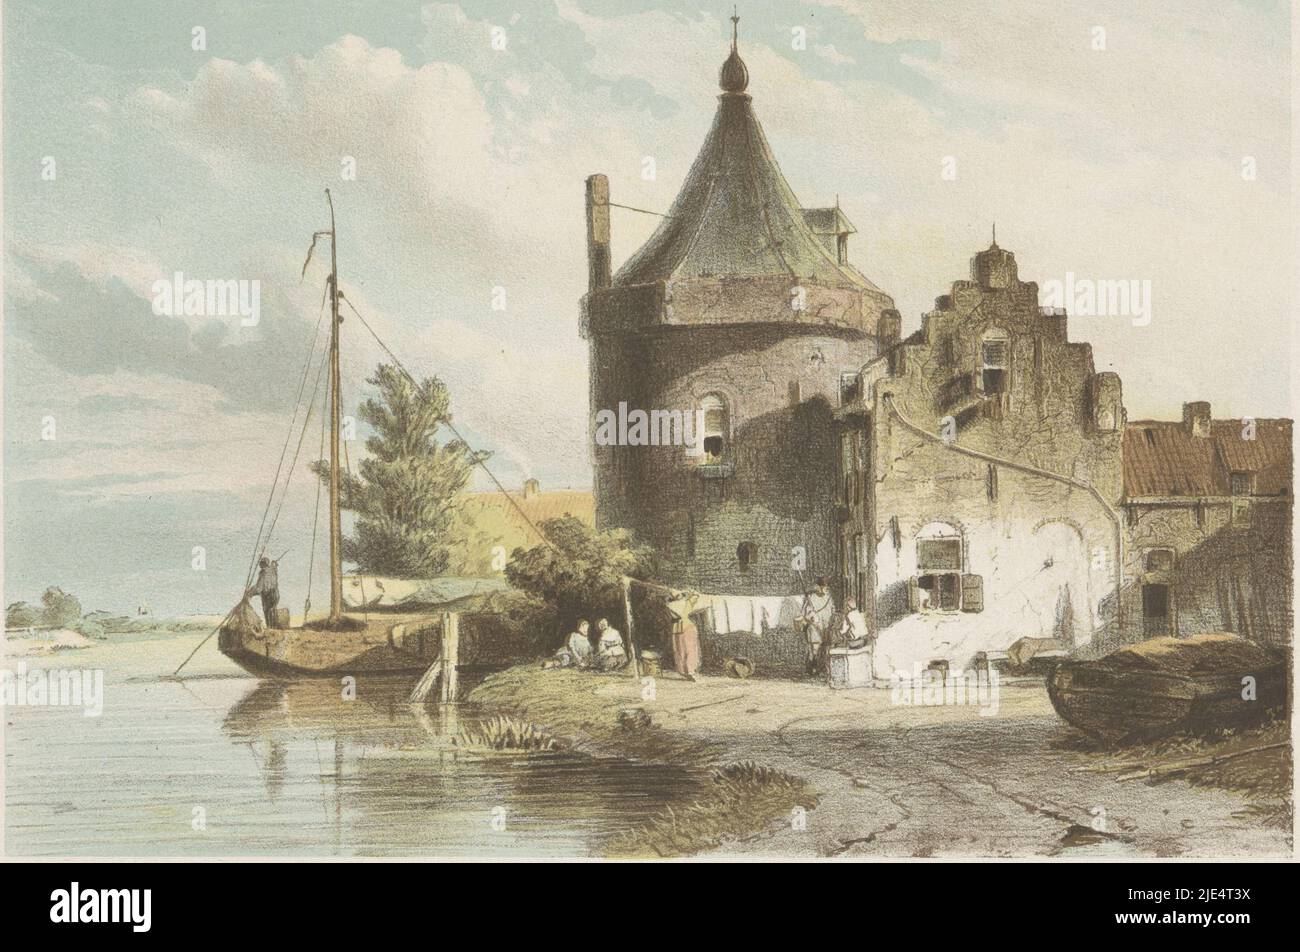 À droite le Waltoren à Culemborg situé sur une rivière. Un voilier sur la rivière, vue de la tour de Culemborg., imprimeur: Jan Weissenbruch, (mentionné sur l'objet), Jan Weissenbruch, (mentionné sur l'objet), imprimeur: Koninklijke Nederlandse Steendrukkerij van C.W. Mieling, (mentionné en objet), la Haye, 1847 - 1865, papier, h 253 mm × l 323 mm Banque D'Images